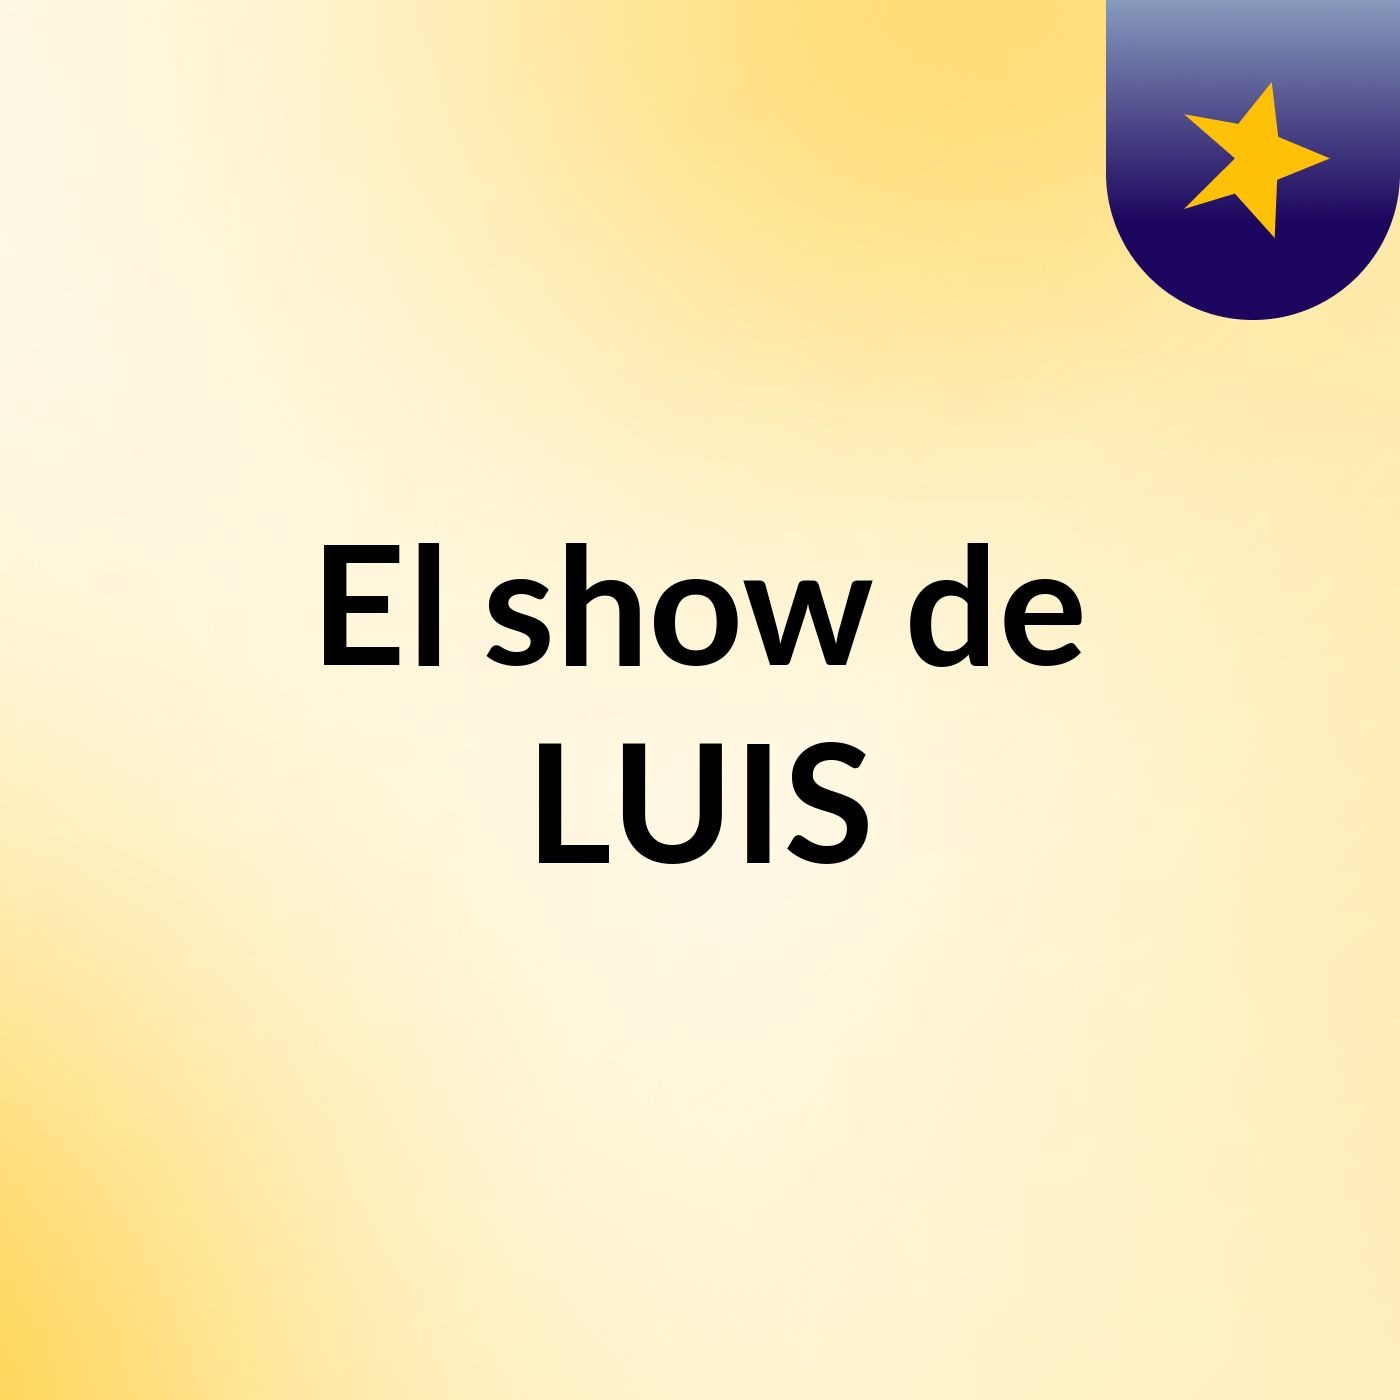 El show de LUIS